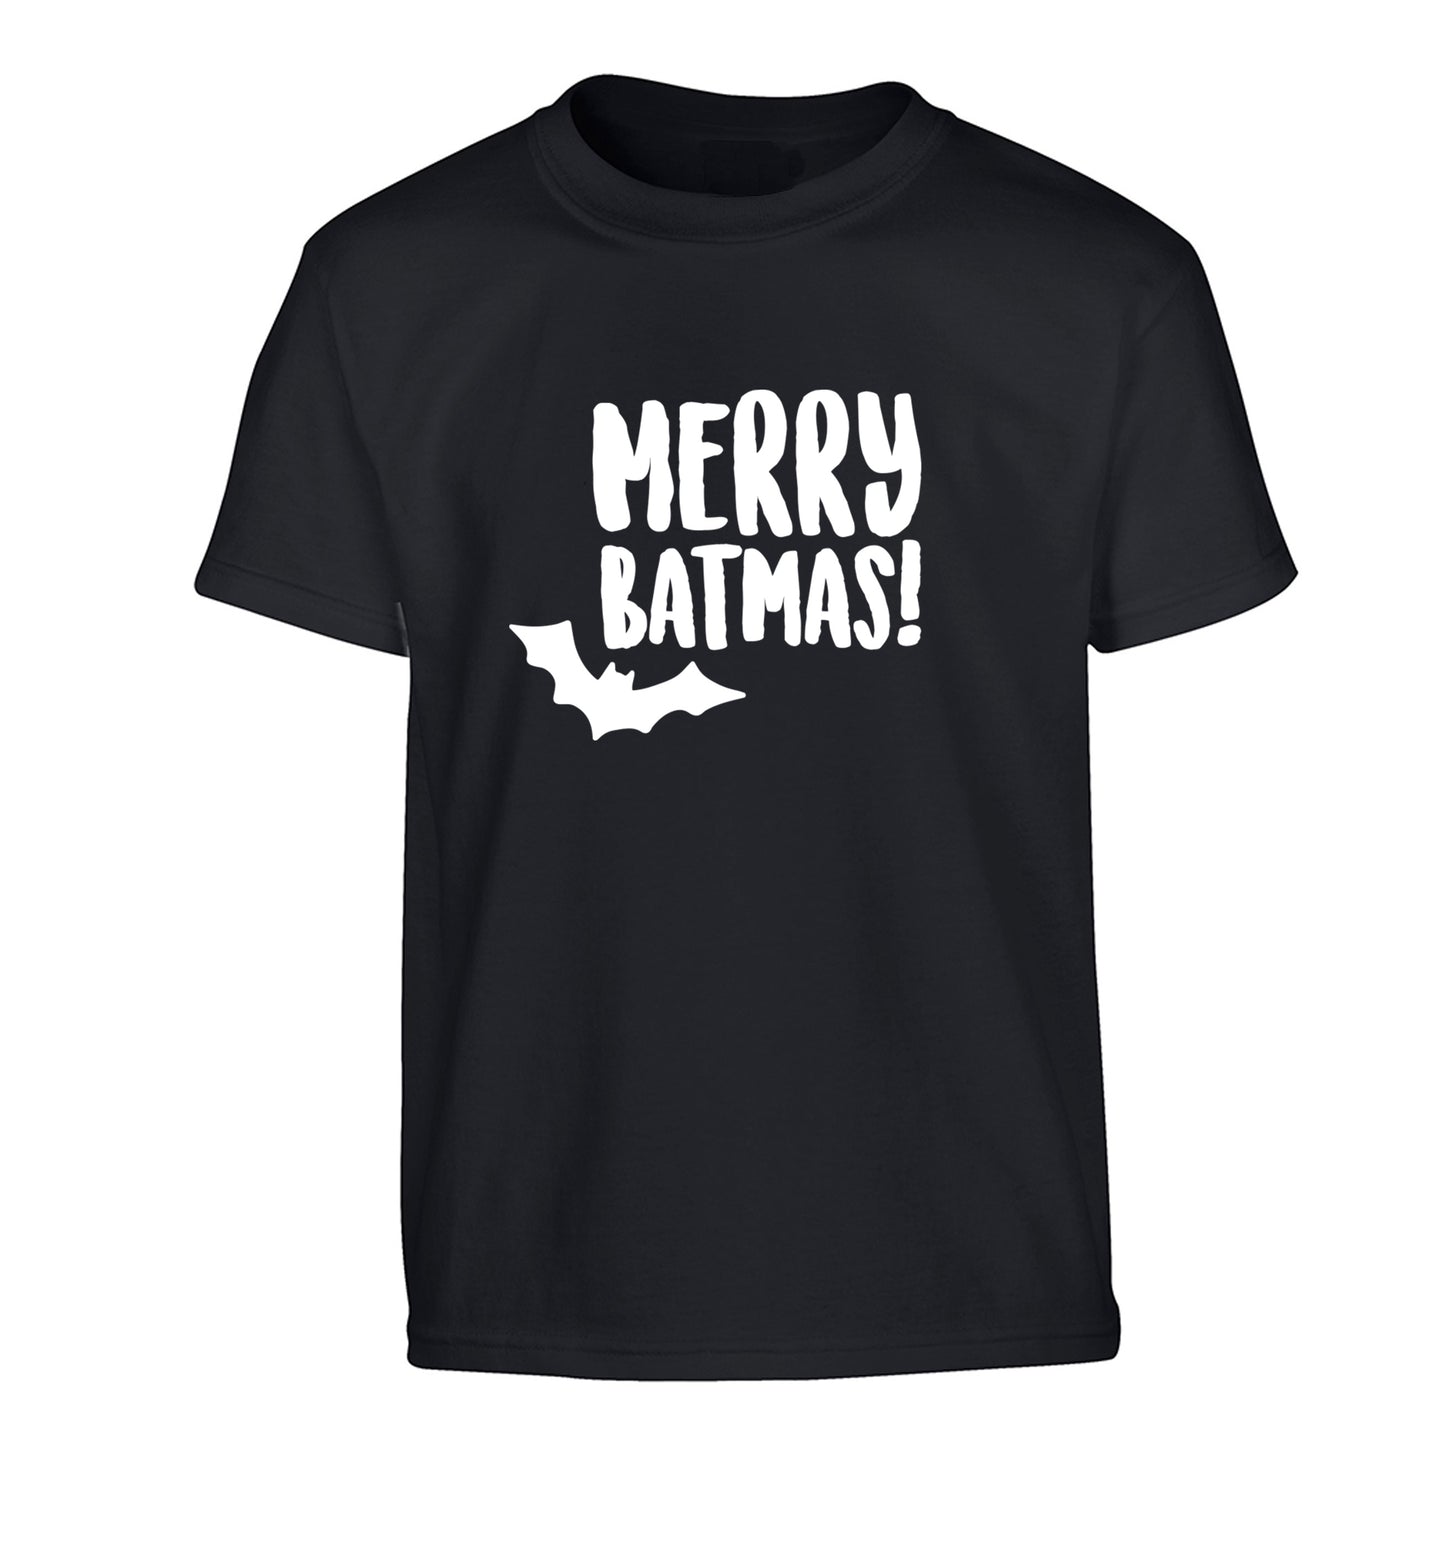 Merry Batmas Children's black Tshirt 12-14 Years